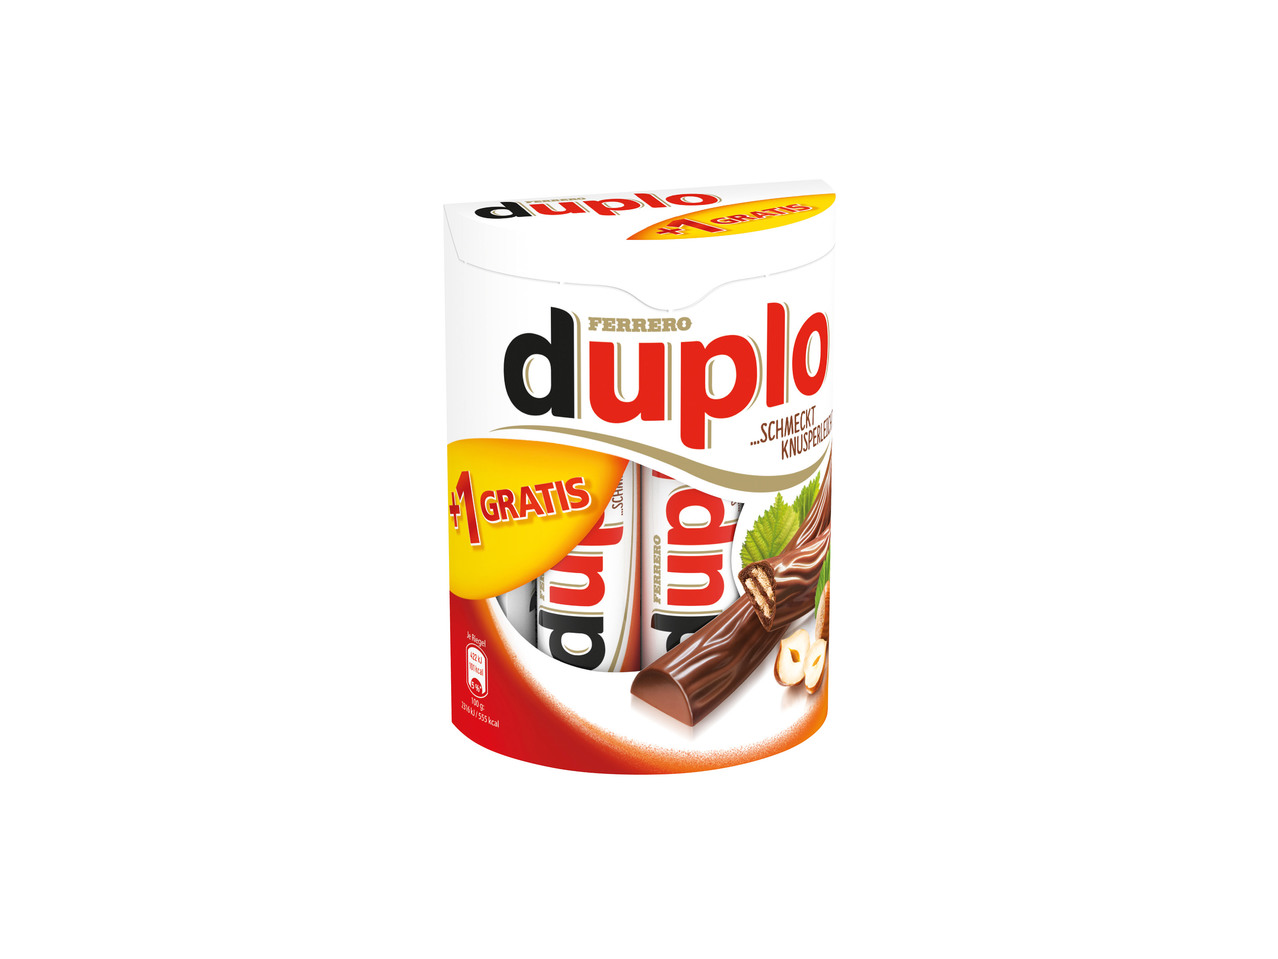 DUPLO / DUPLO WHITE